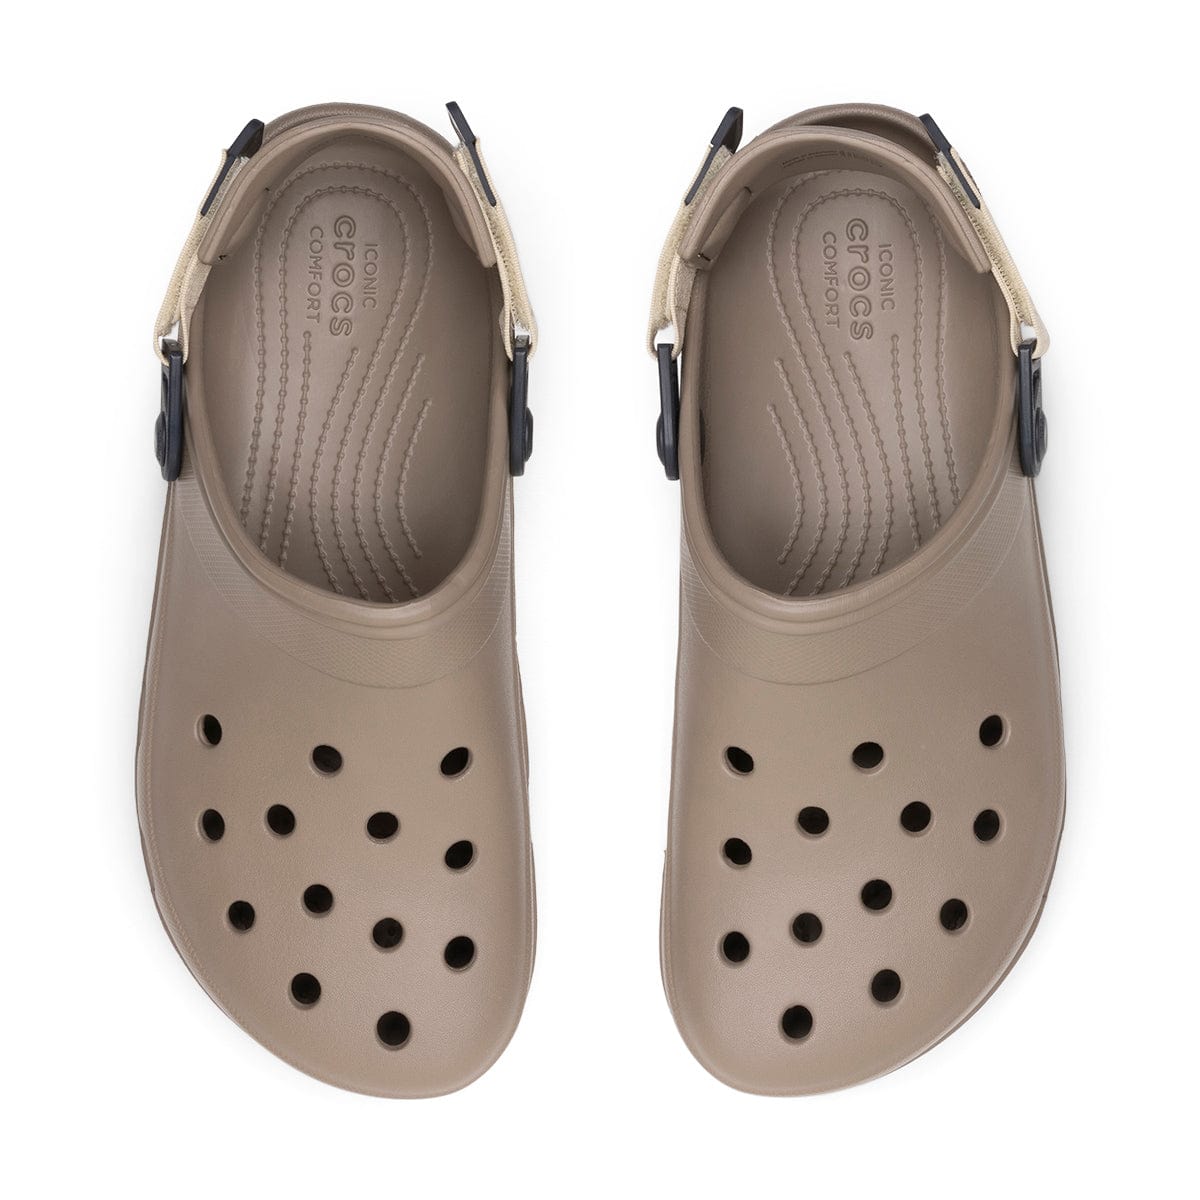 Crocs Sandals CLASSIC ALL TERRAIN CLOG